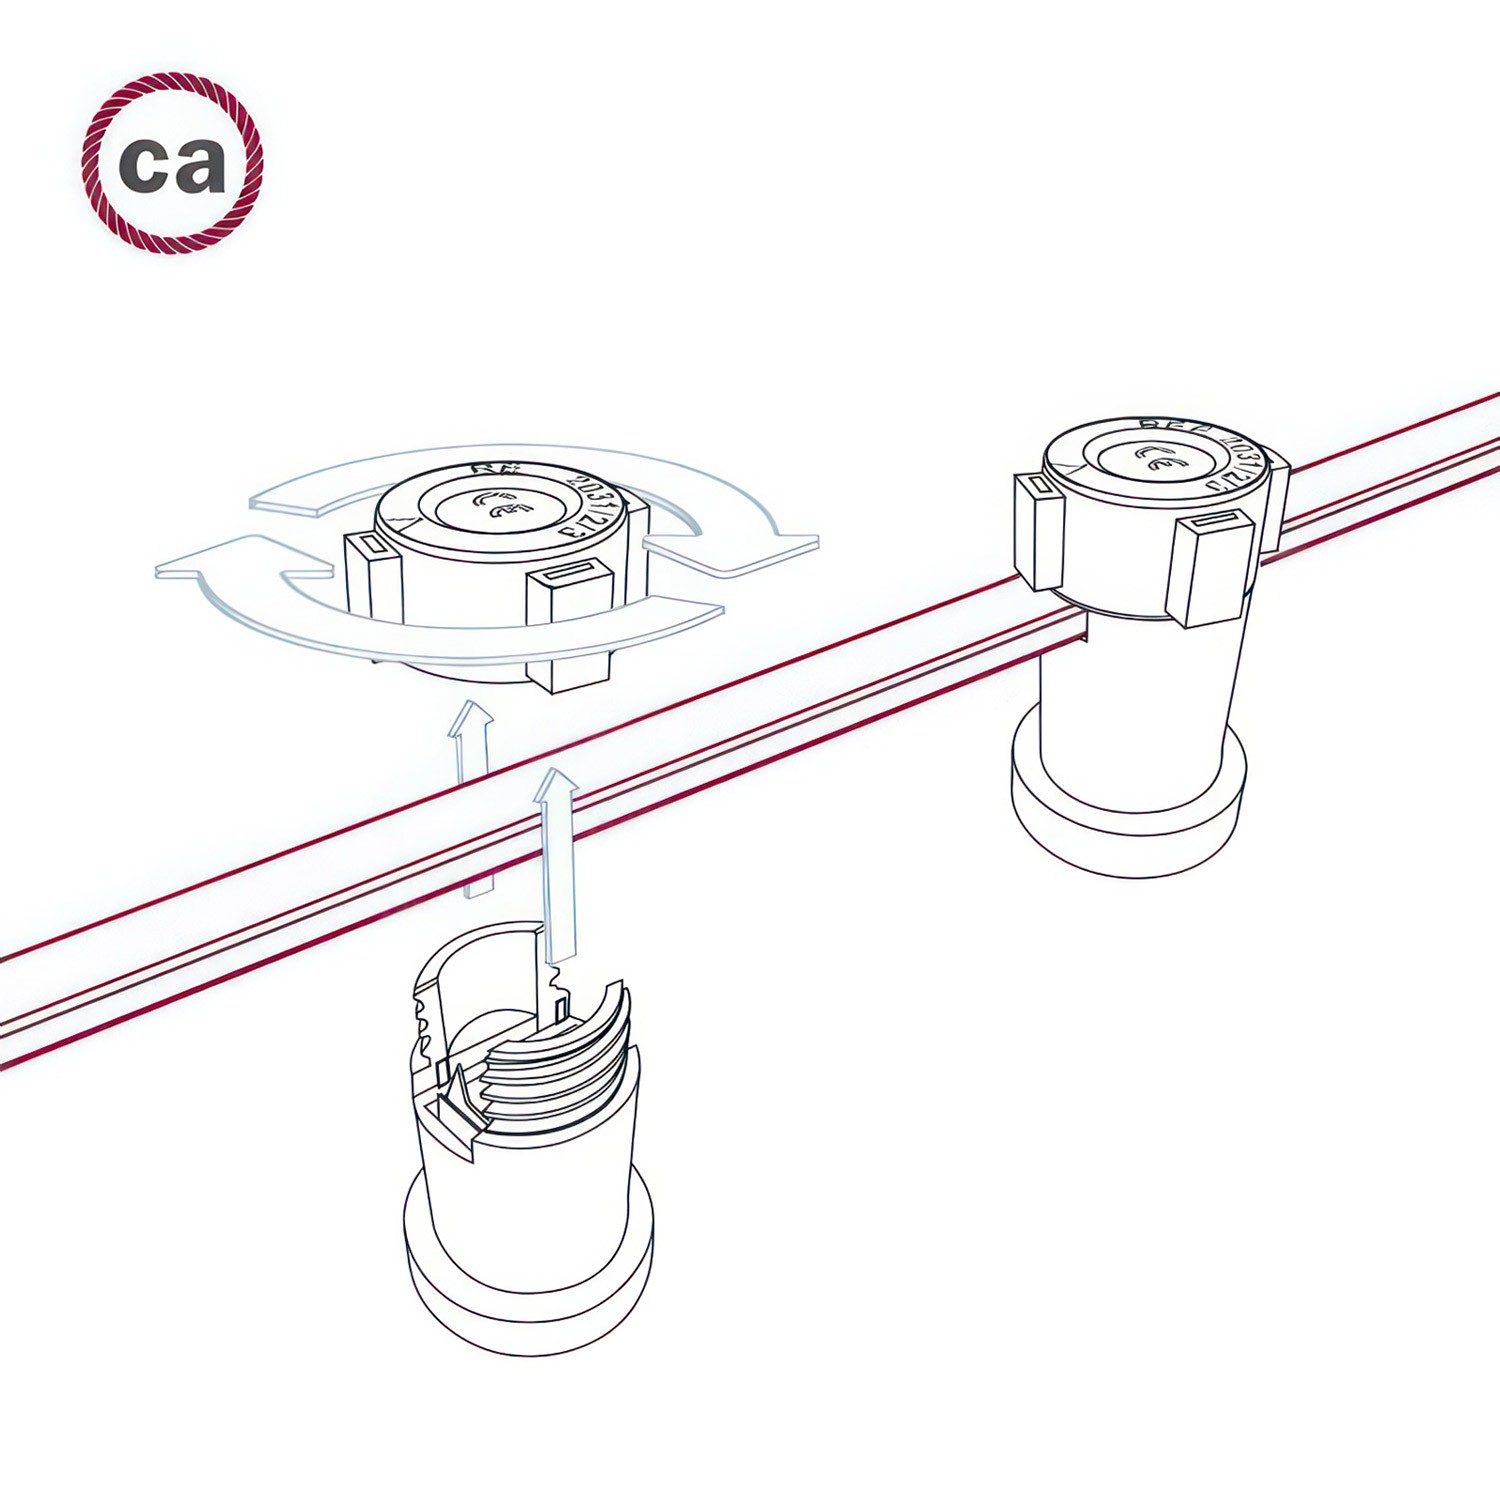 Elektrisk kabel för ljusslinga täckt med Rött CM09 tyg - UV-beständig